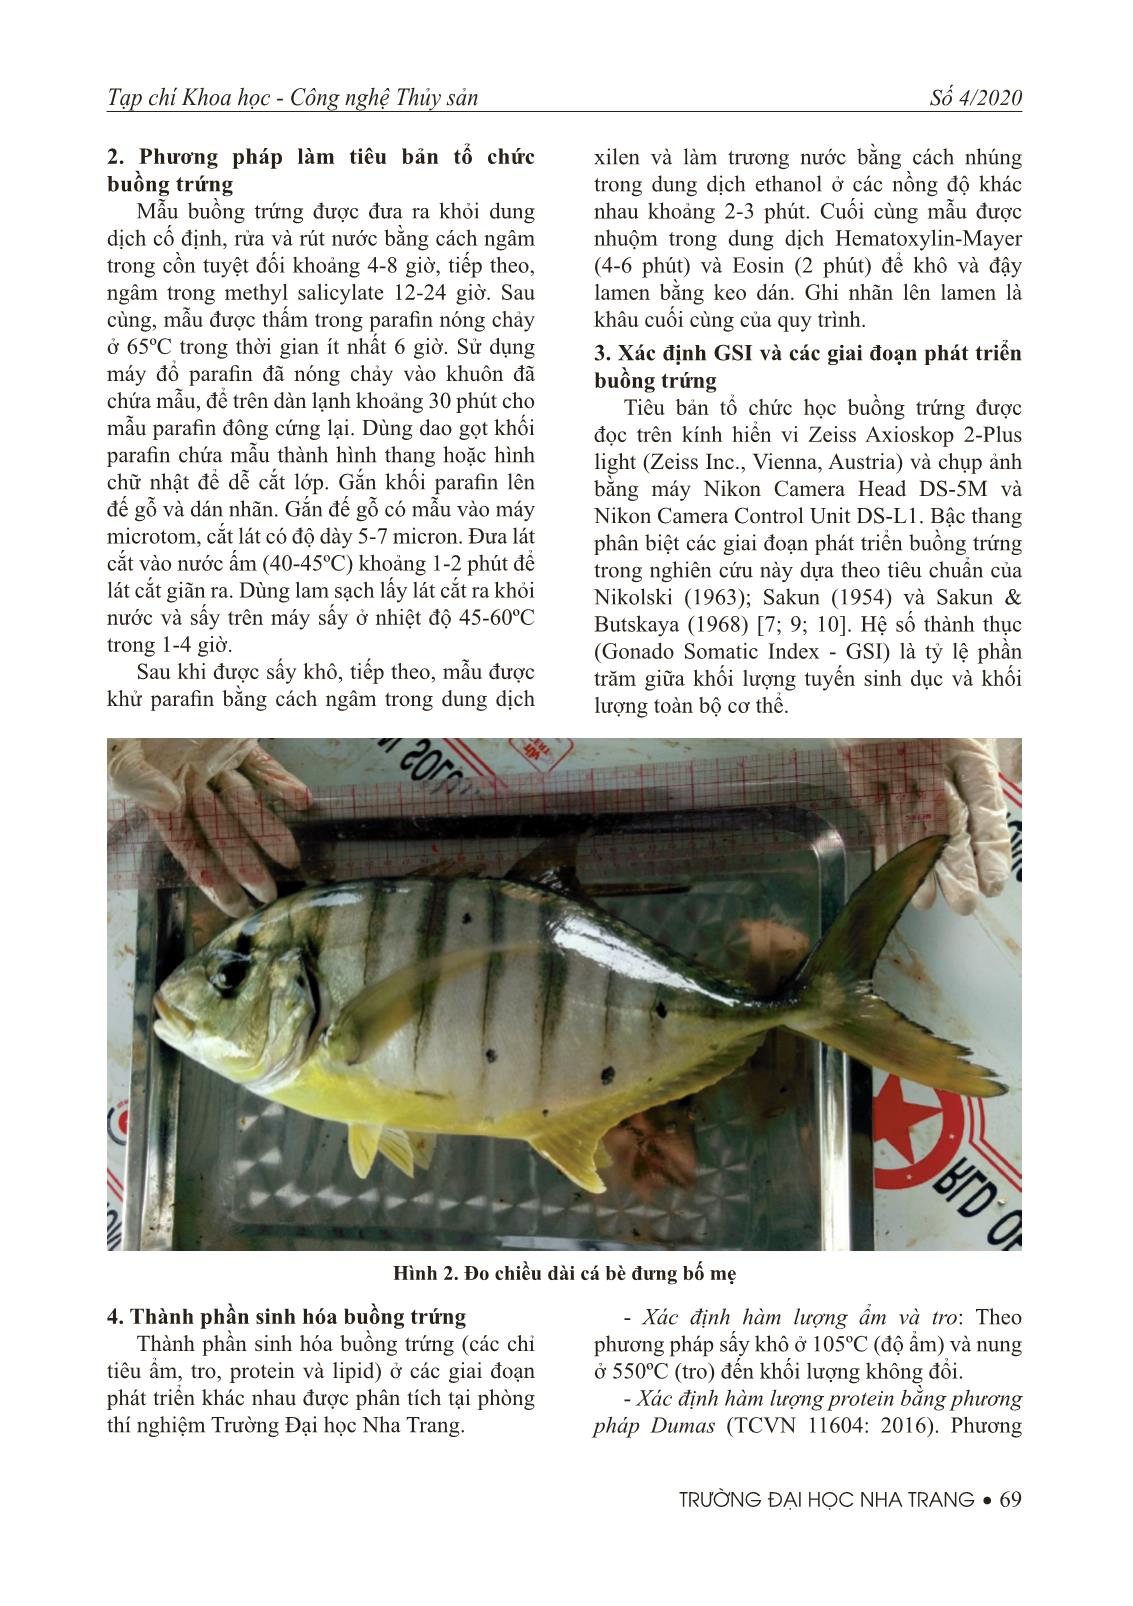 Nghiên cứu đặc điểm sinh học buồng trứng cá bè đưng trang 3